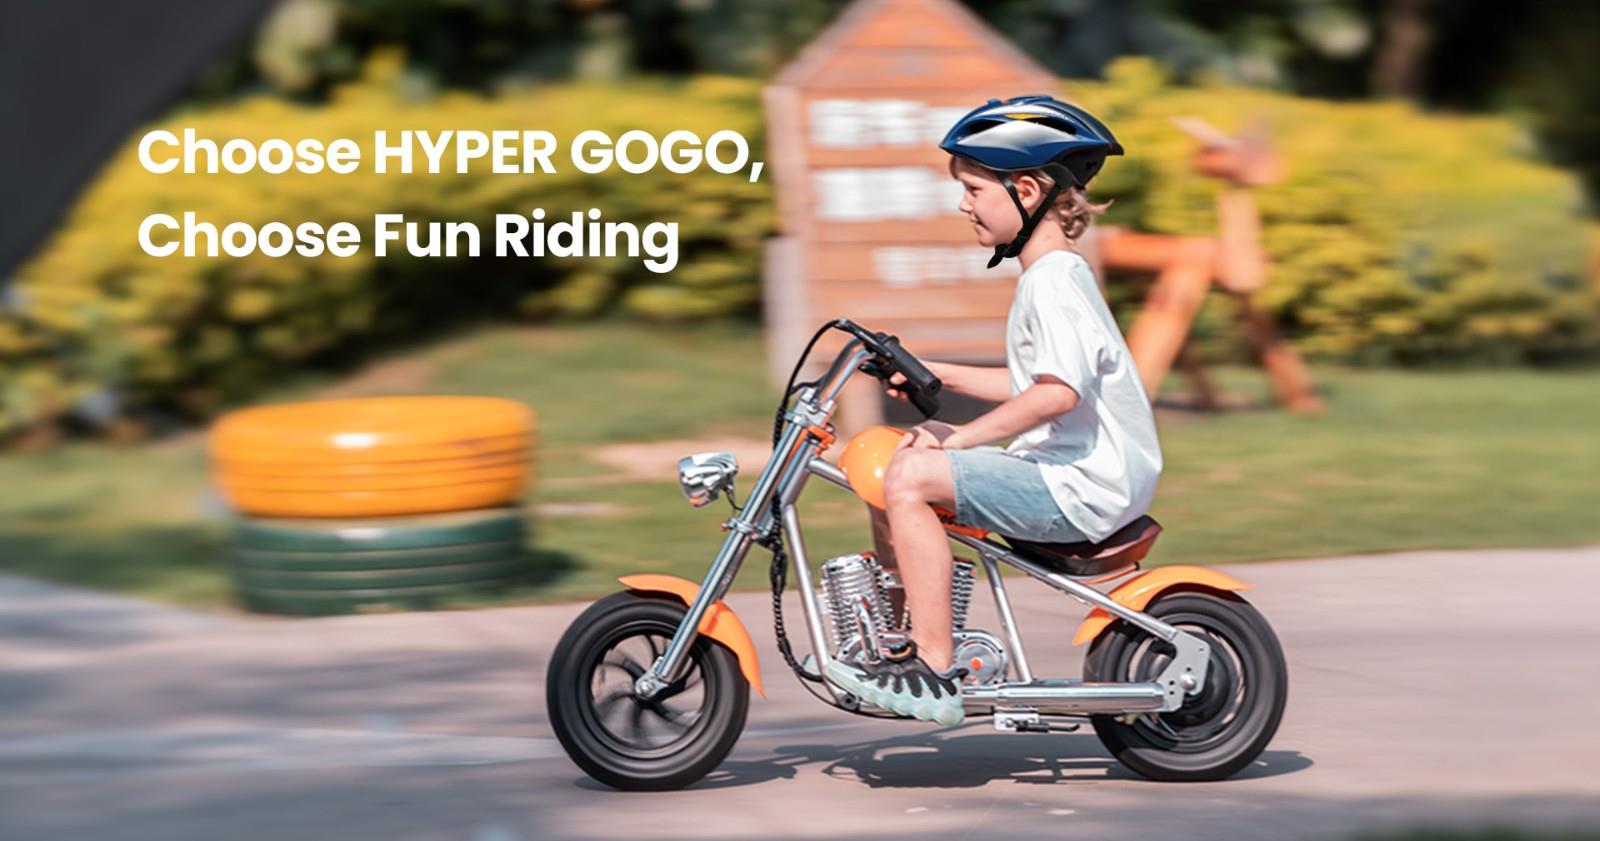 Hyper GOGO Challenger 12 Plus elektrische motorfiets met app voor kinderen, 12 x 3 Banden, 160W, 5.2Ah, luidspreker - Oranje